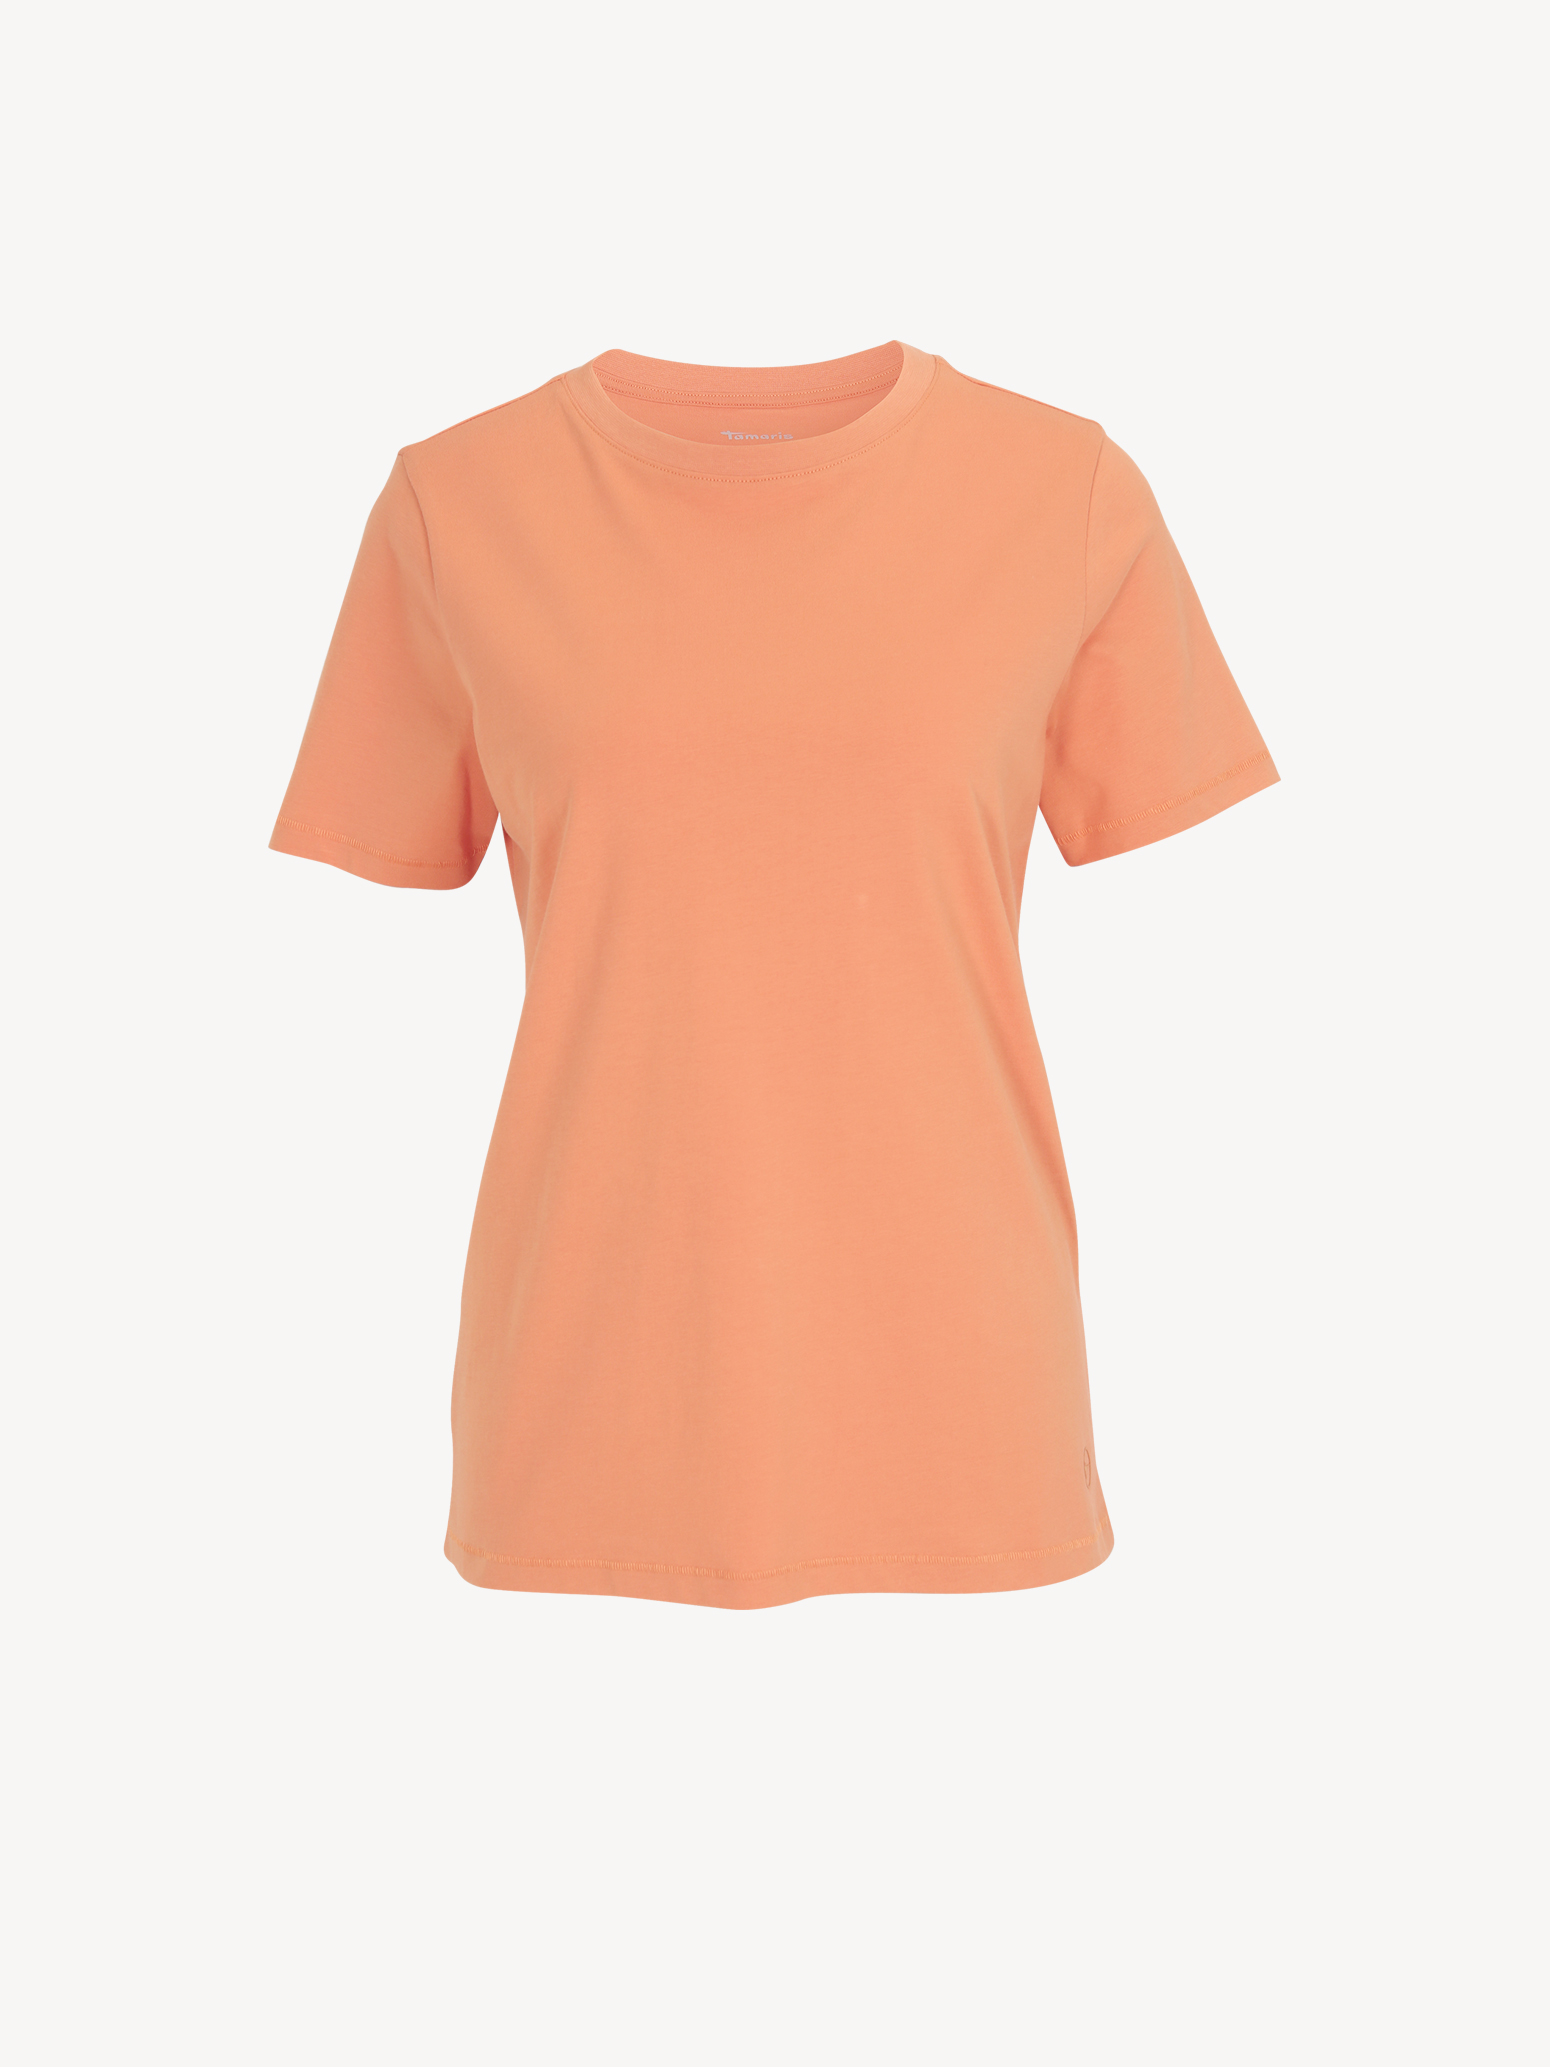 T-Shirt - orange TAW0088-30043: T-Shirts Tamaris kaufen! online